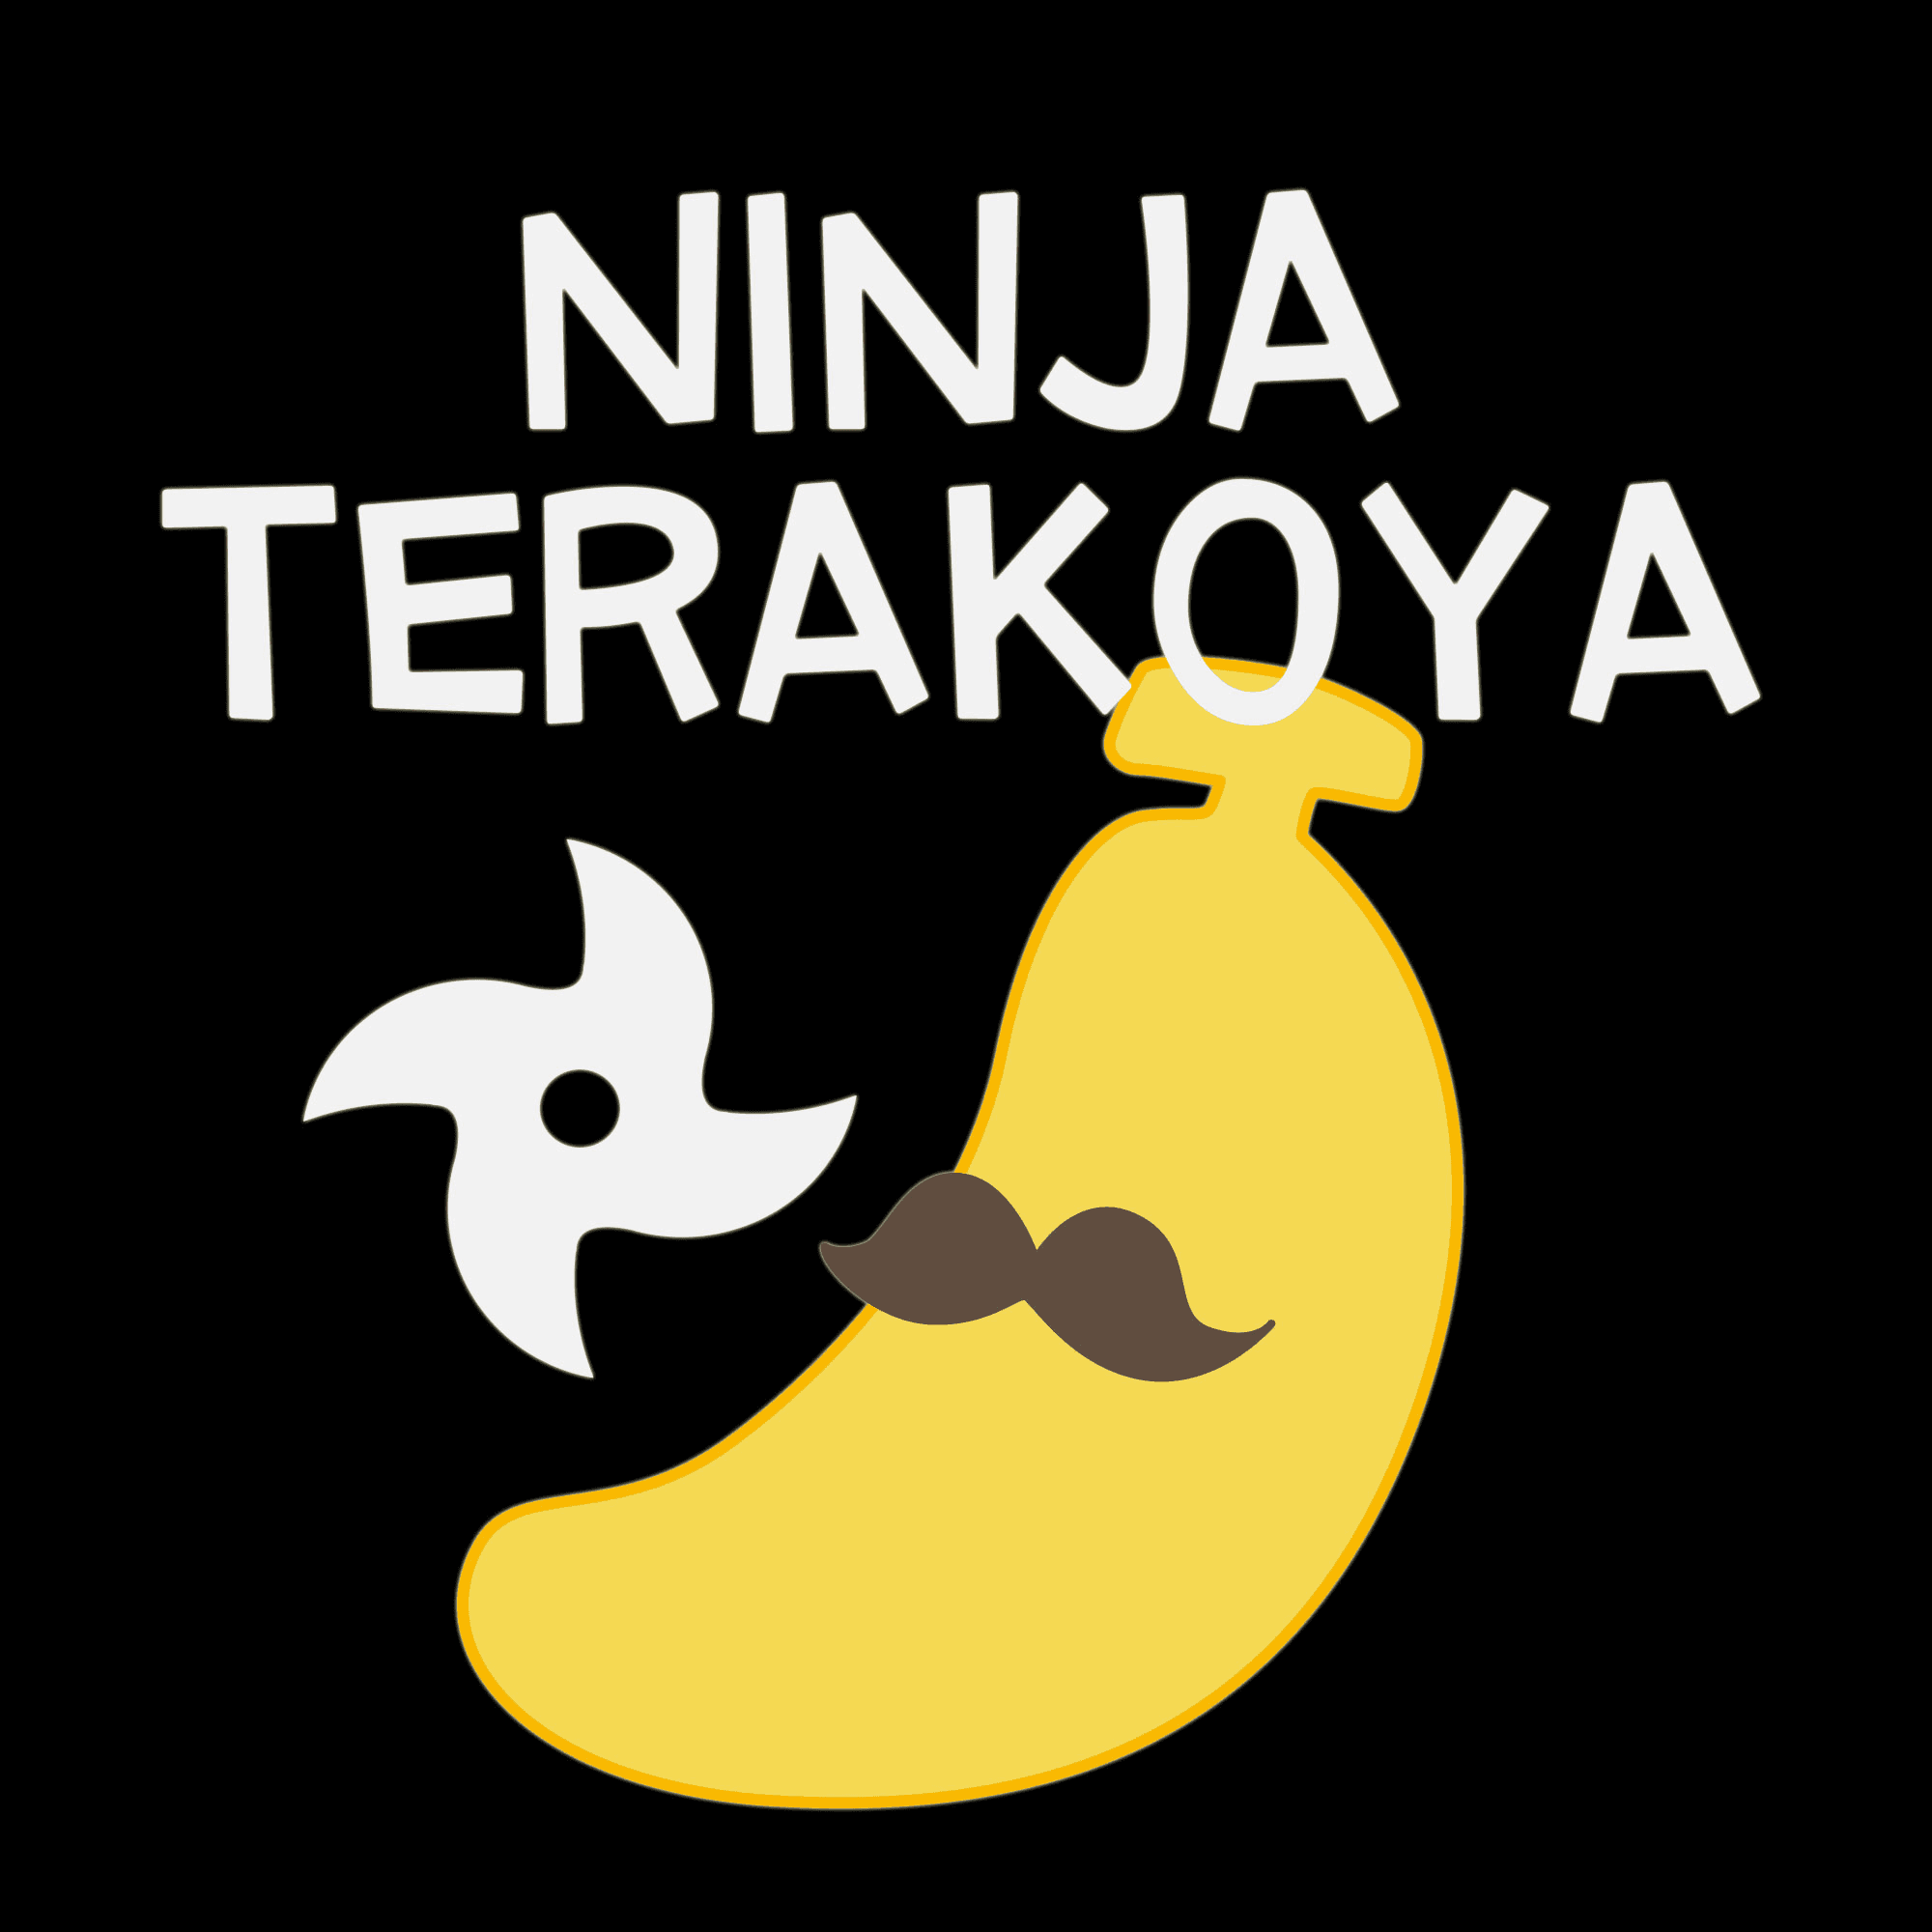 Terakoya member